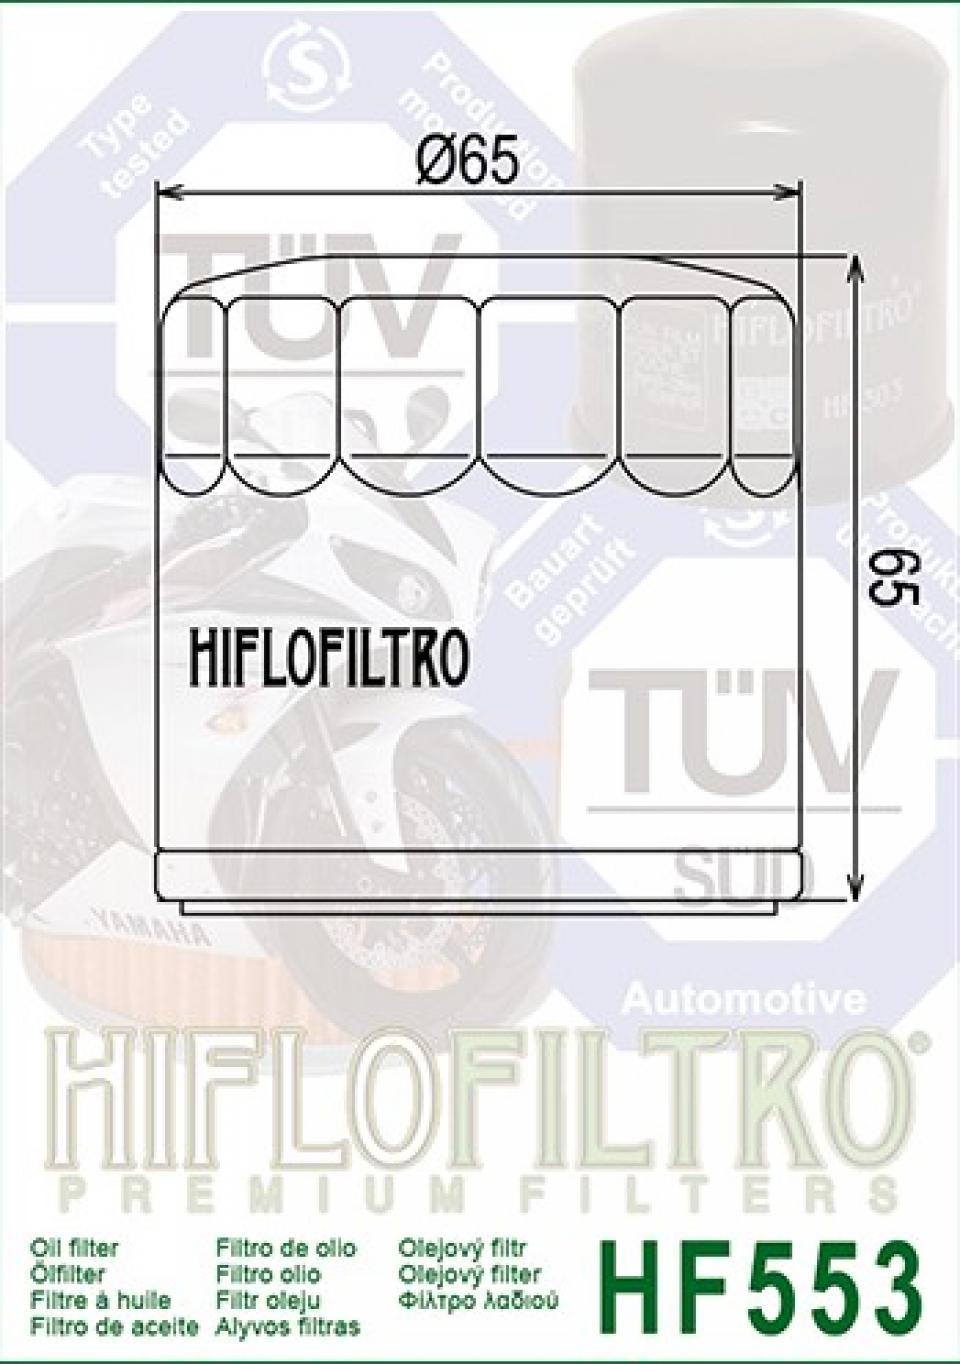 Filtre à huile Hiflofiltro pour Moto Benelli 1130 Tornado 2006 à 2015 Neuf